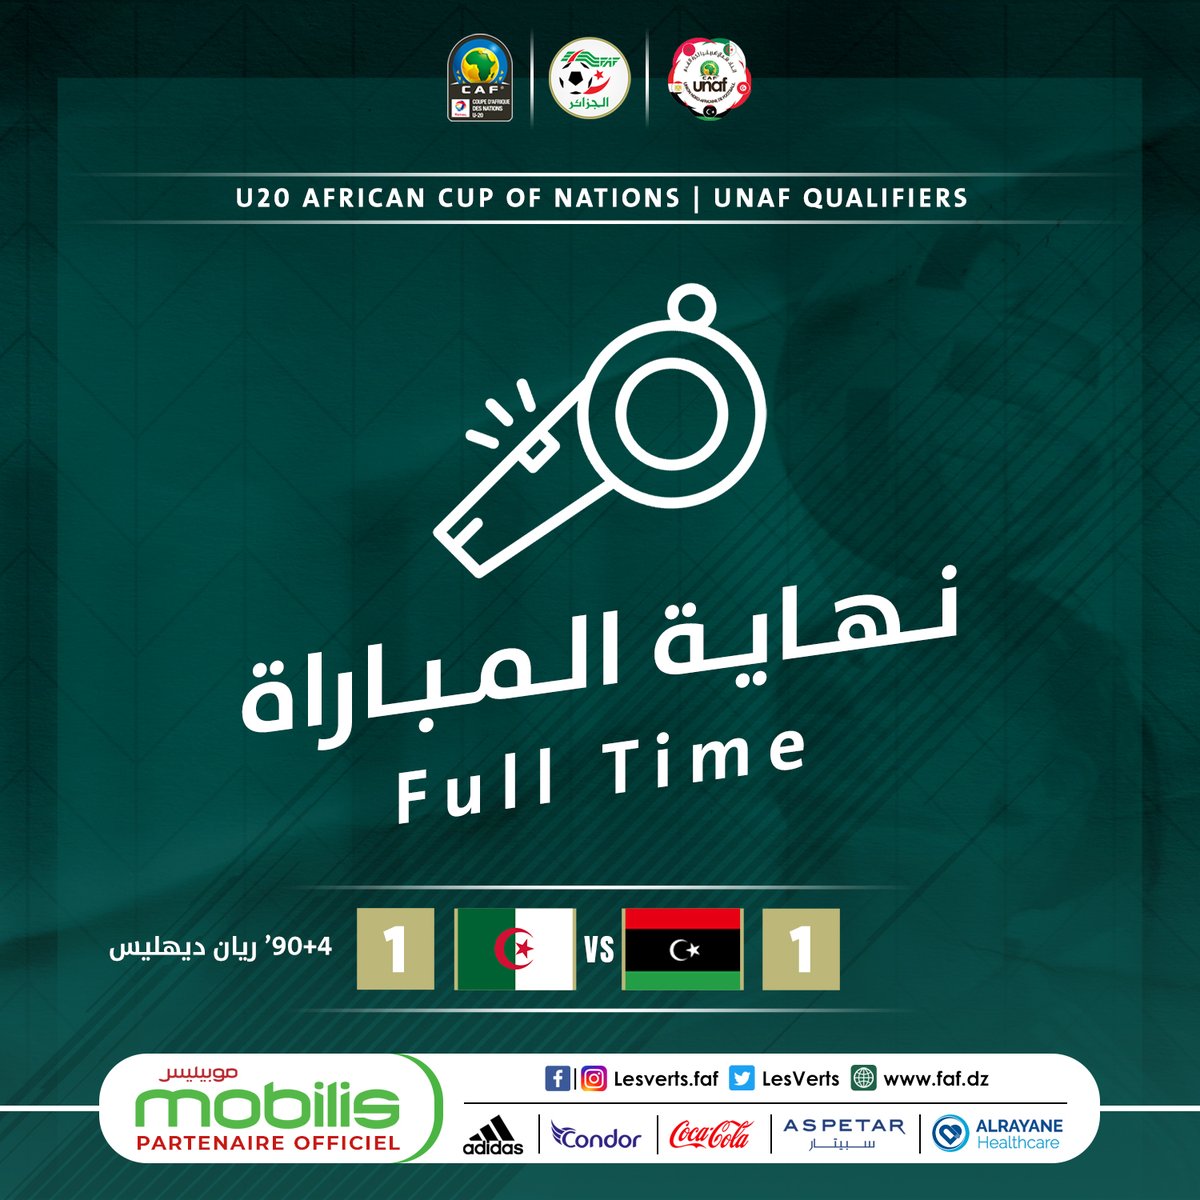 نهاية المباراة بالتعادل الإيجابي بهدف لمثله بين المنتخب الوطني ونظيره الليبي FfXrwiRWYAIZz74?format=jpg